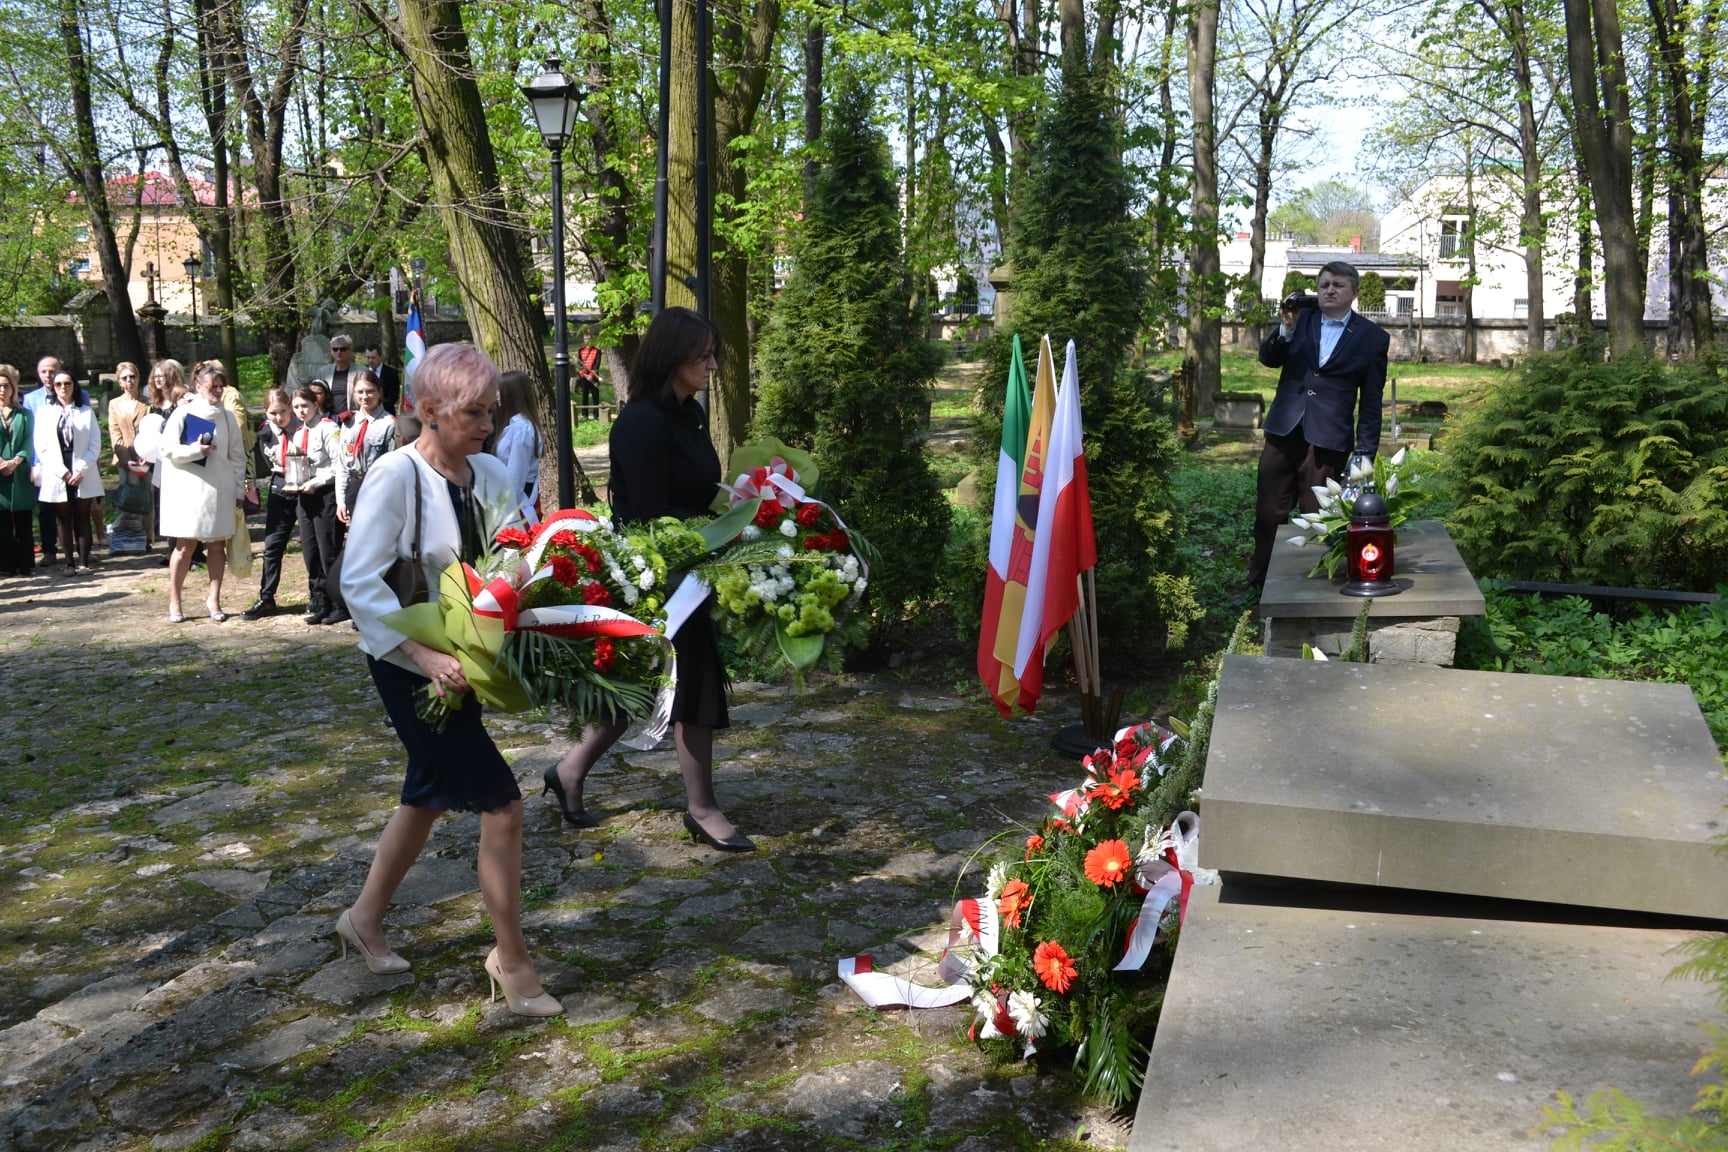 Wicestarosta Paulina Polak skłąda kwiaty przy grobie Francessco Nullo na starym cmentarzu w Olkuszu